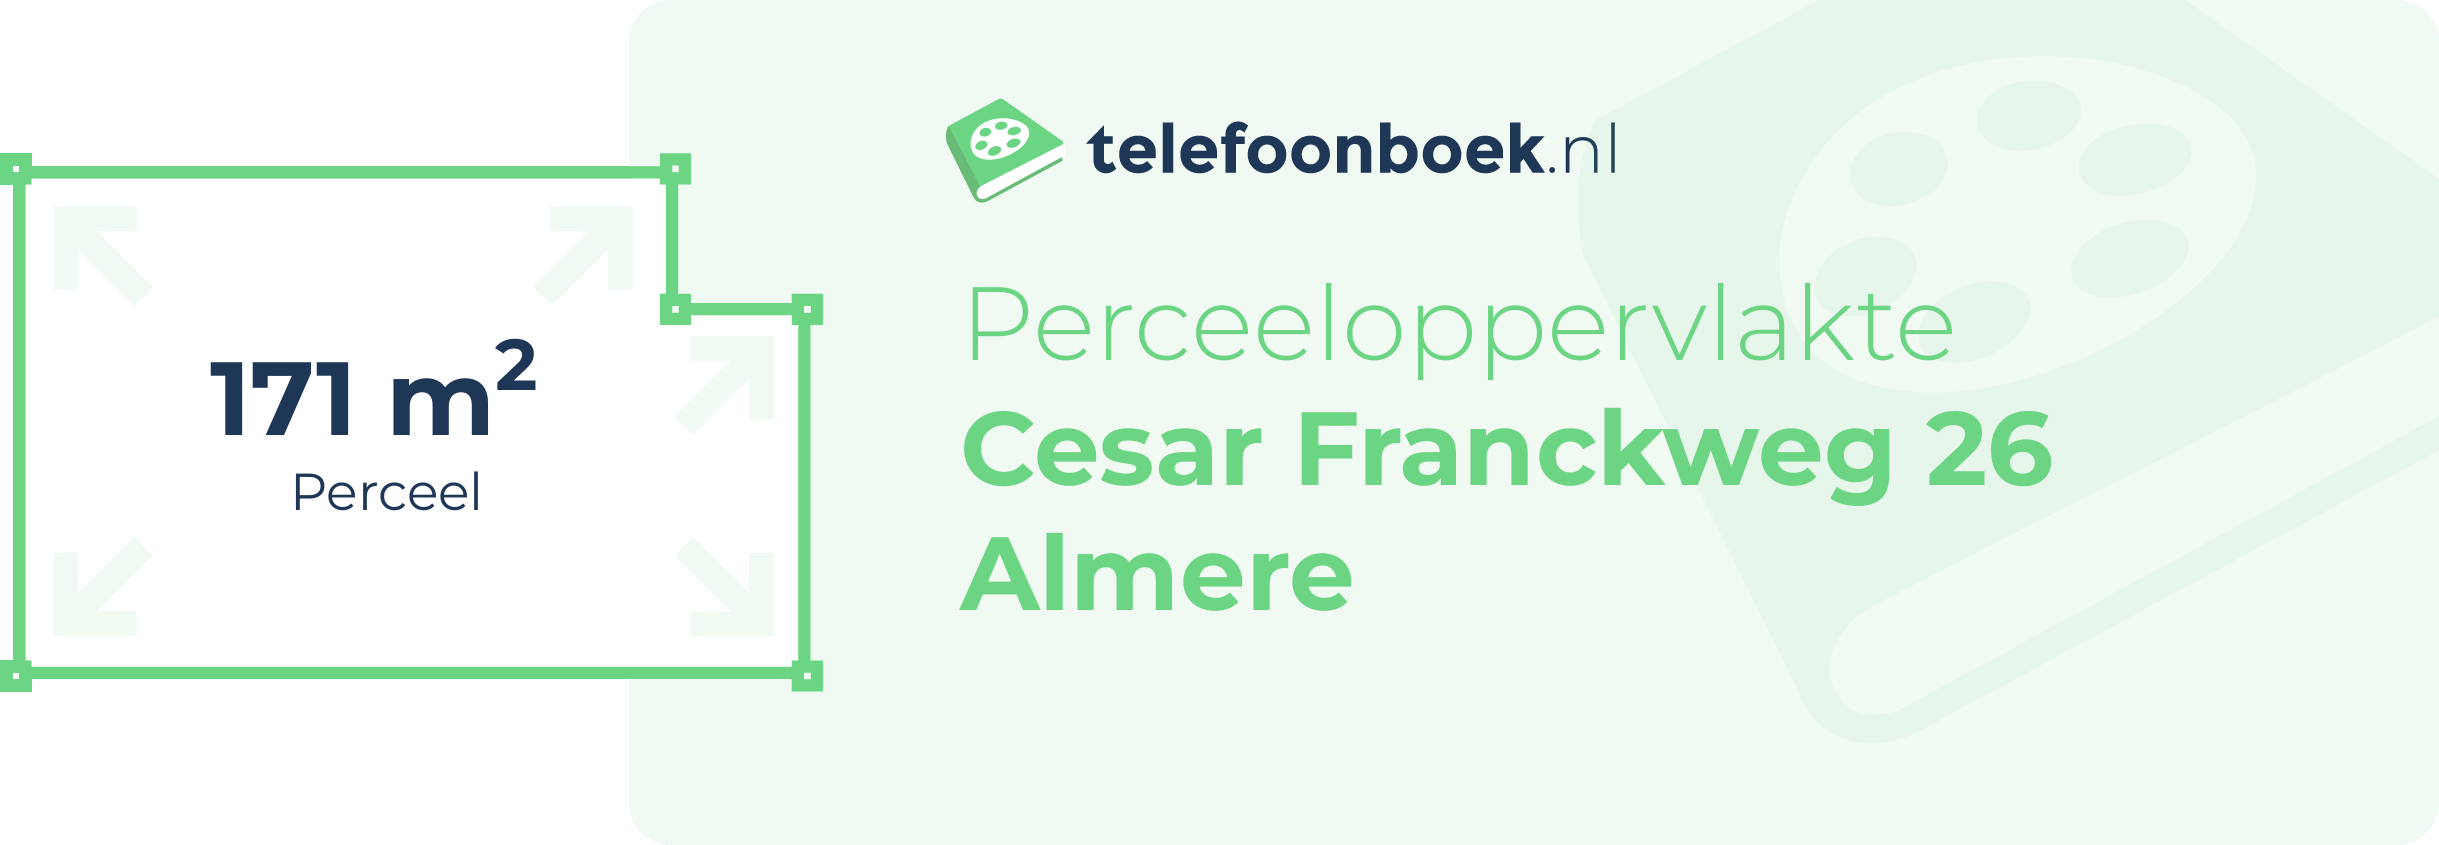 Perceeloppervlakte Cesar Franckweg 26 Almere